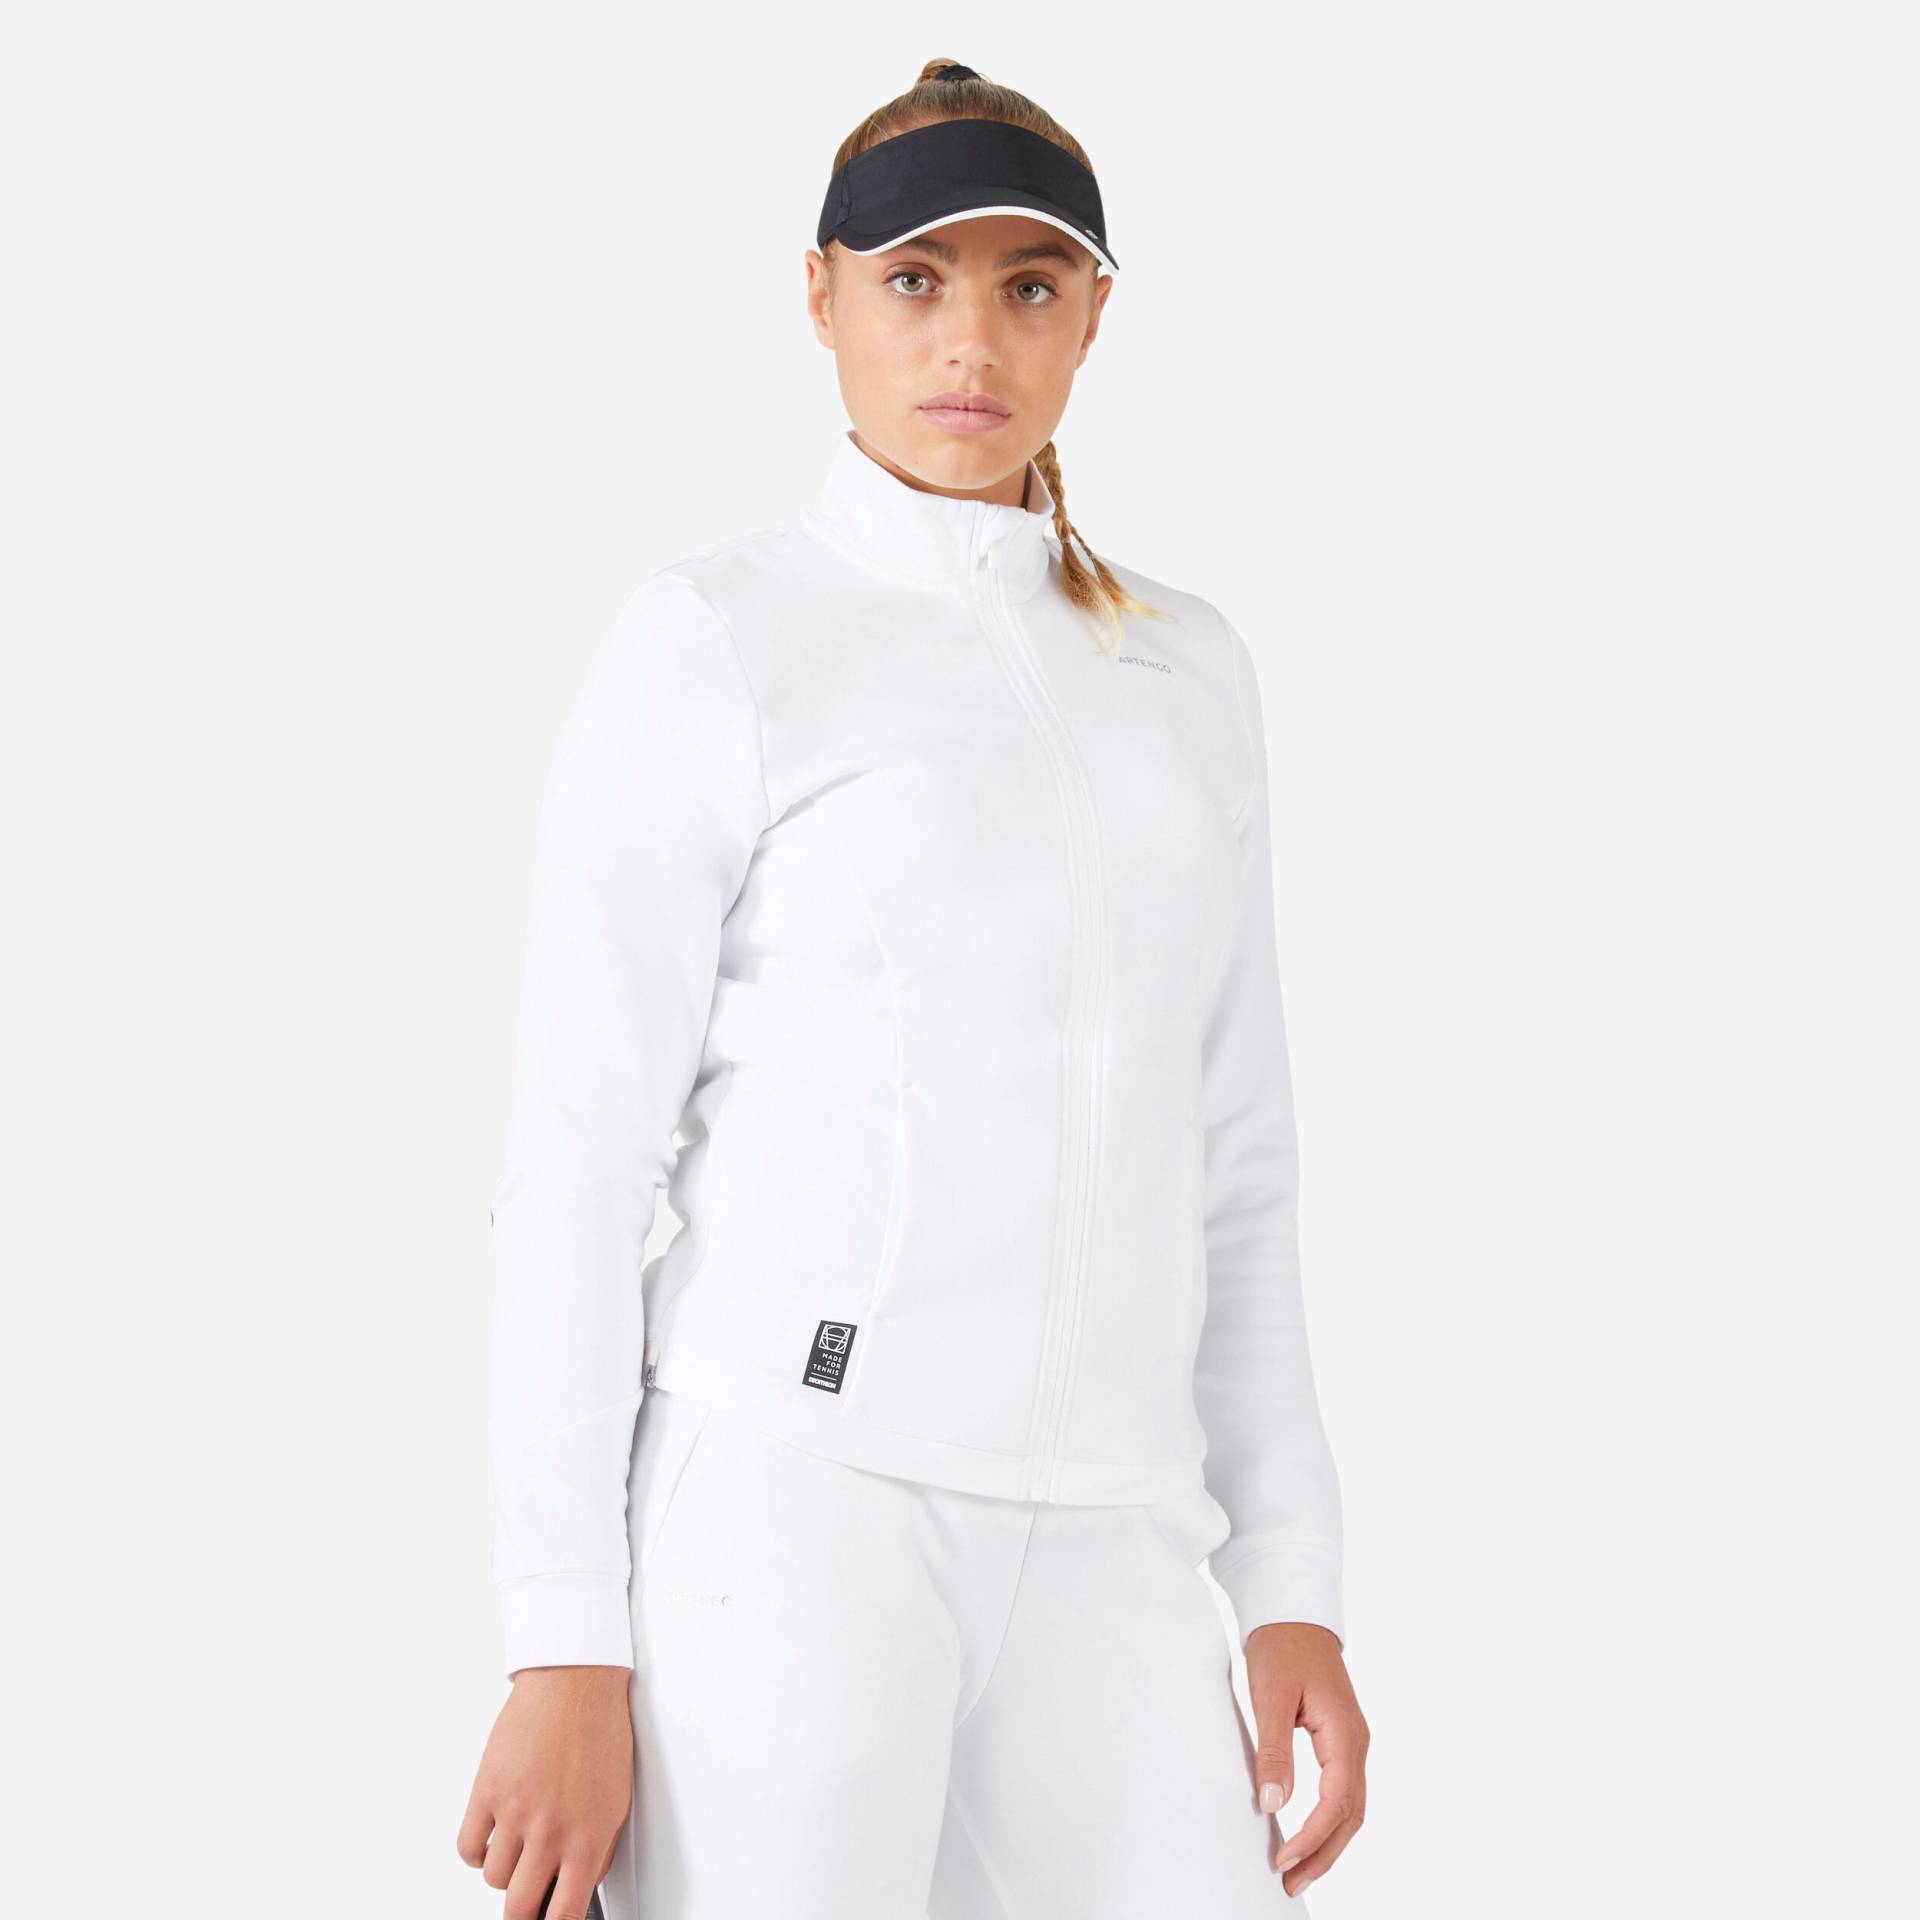 Damen Tennisjacke - Dry 900 Soft weiss von ARTENGO